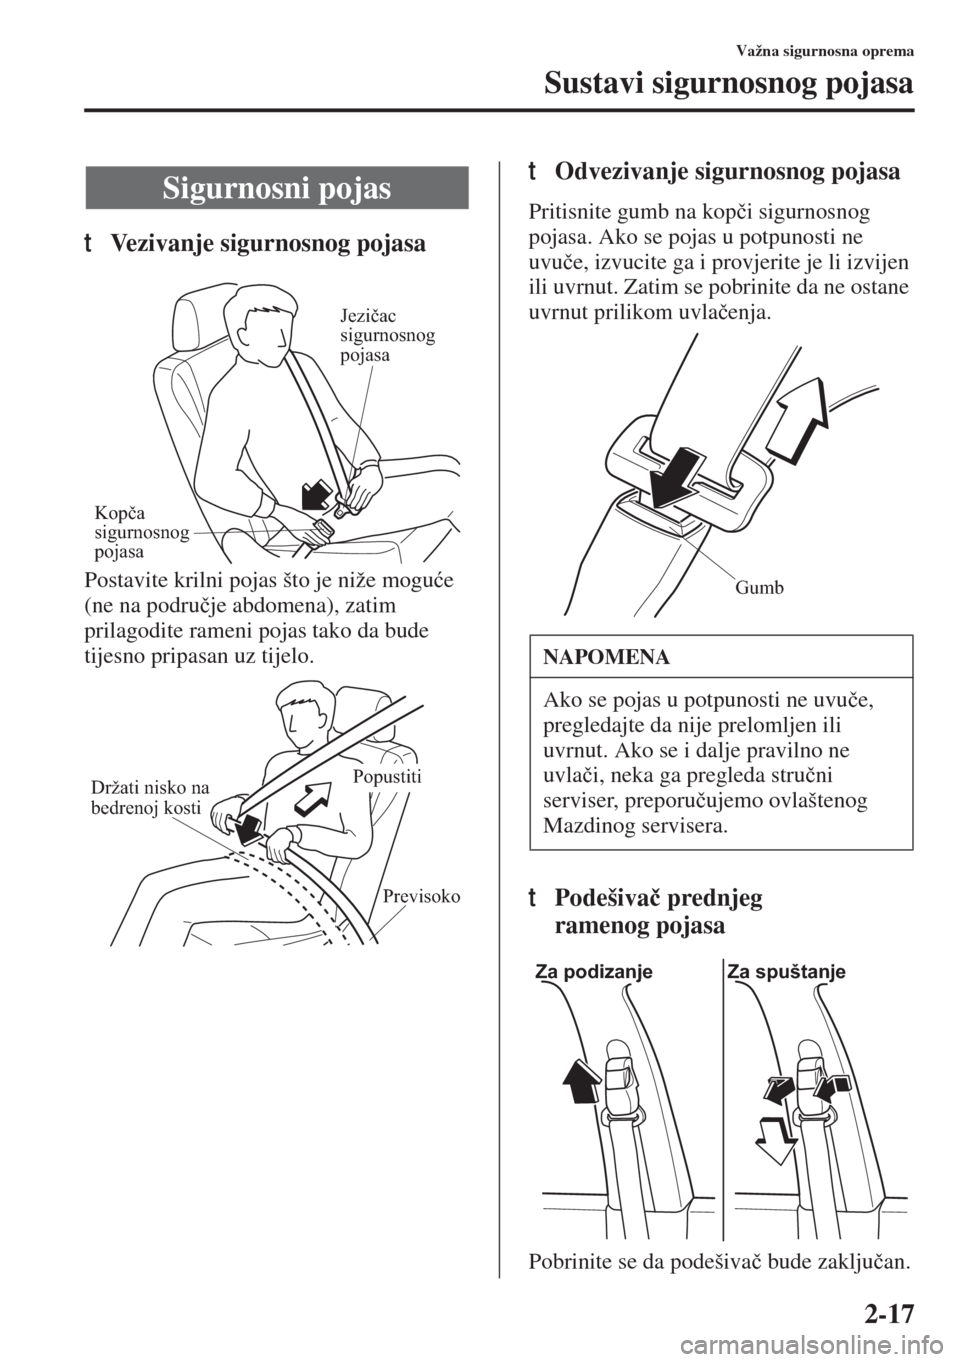 MAZDA MODEL 3 HATCHBACK 2015  Upute za uporabu (in Crotian) 2-17
Važna sigurnosna oprema
Sustavi sigurnosnog pojasa
tVezivanje sigurnosnog pojasa
Postavite krilni pojas što je niže mogu�üe 
(ne na podru�þje abdomena), zatim 
prilagodite rameni pojas tako 